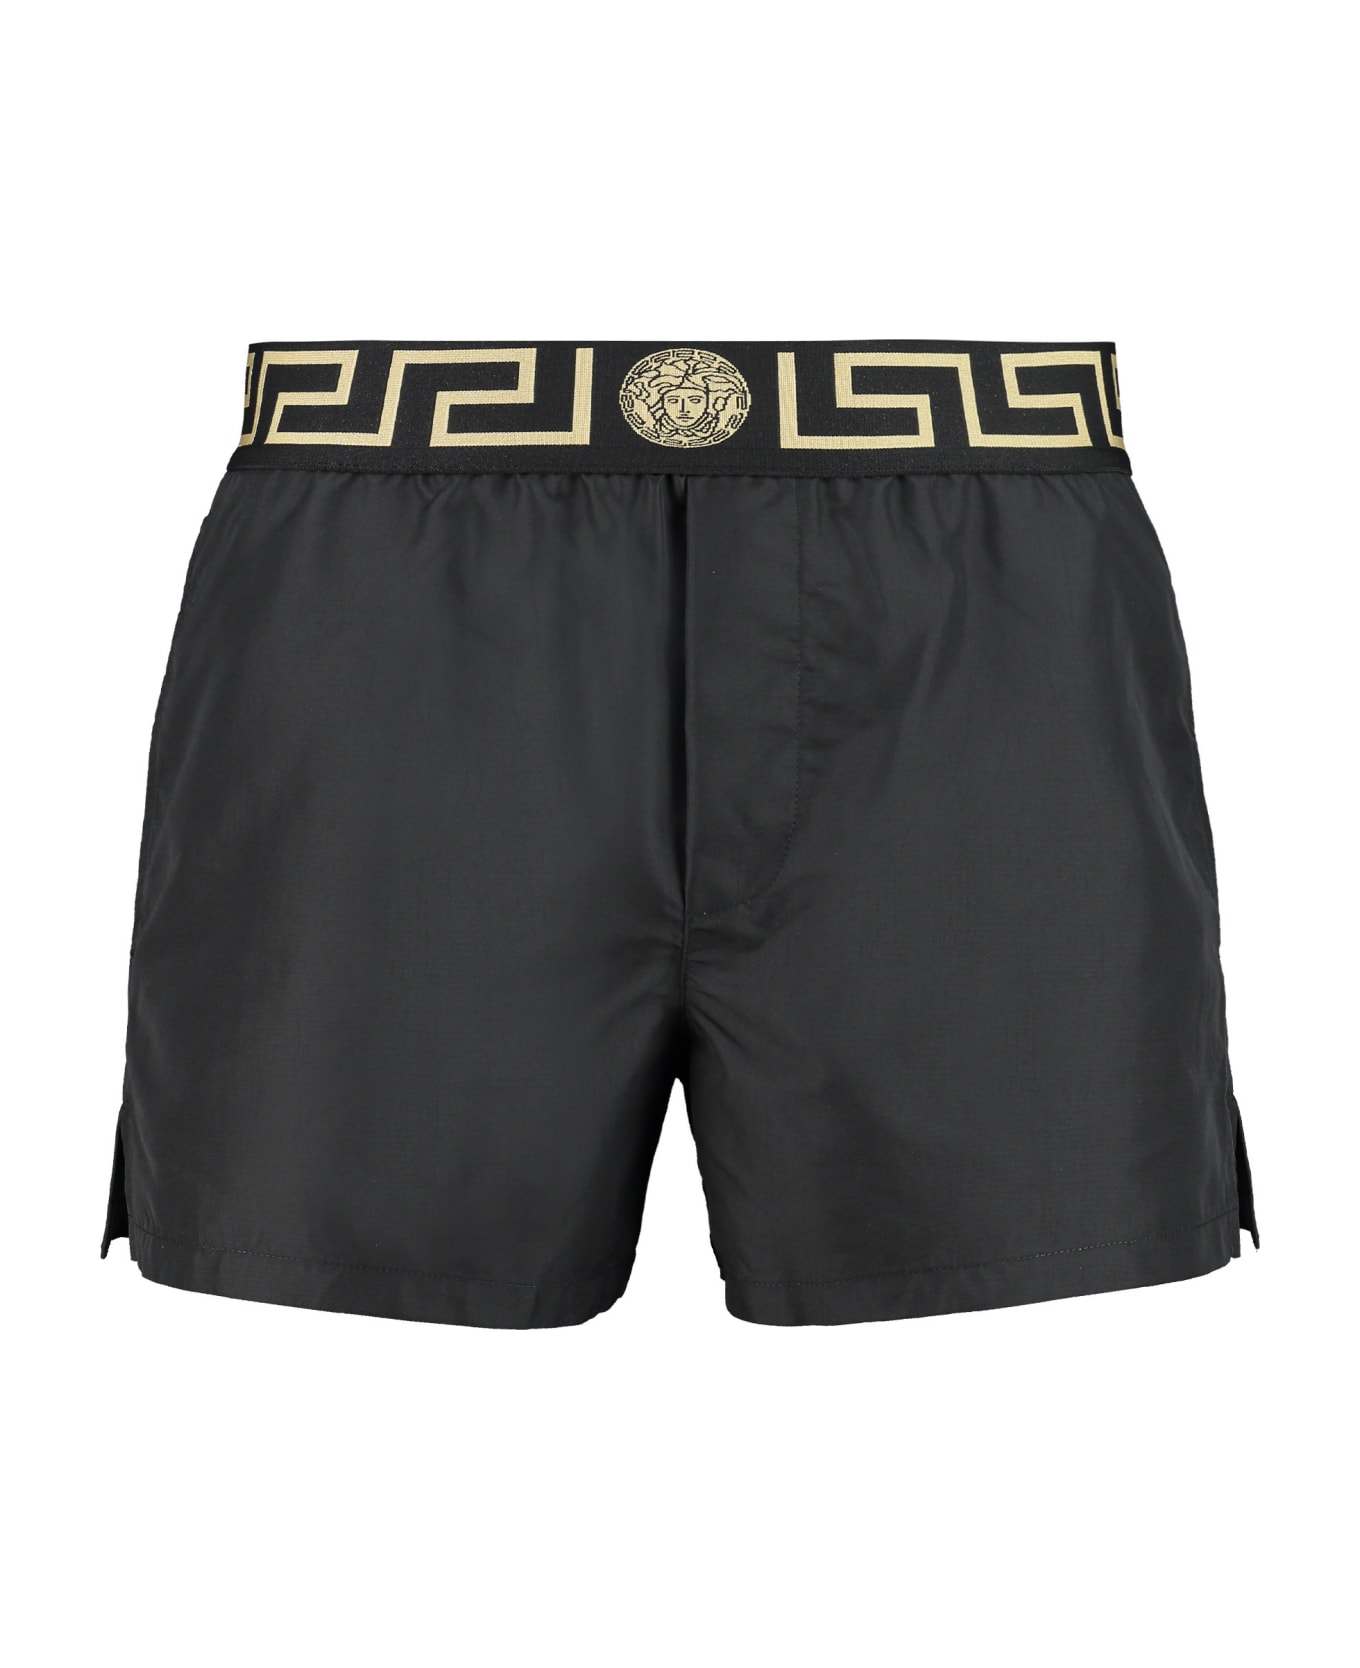 Versace Swim Shorts - Nero greca oro